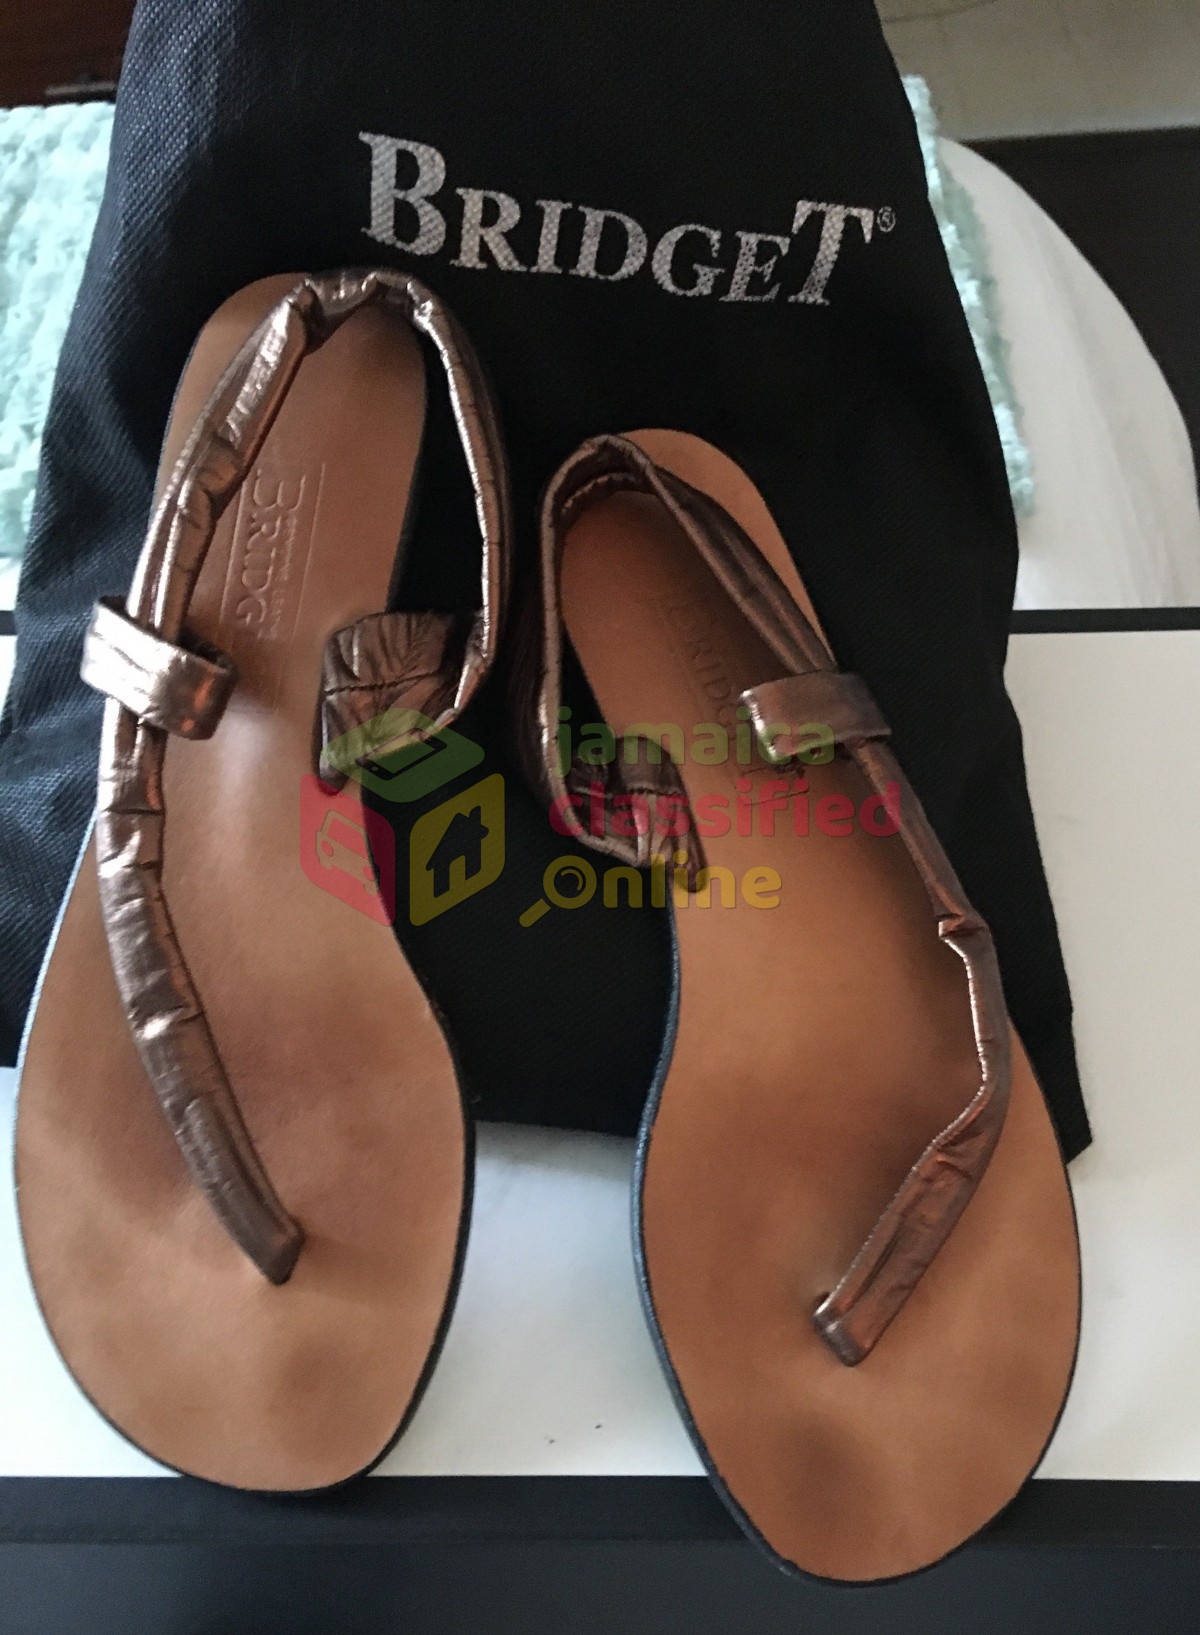 Authentic Bridget Sandals  for sale in Little London 